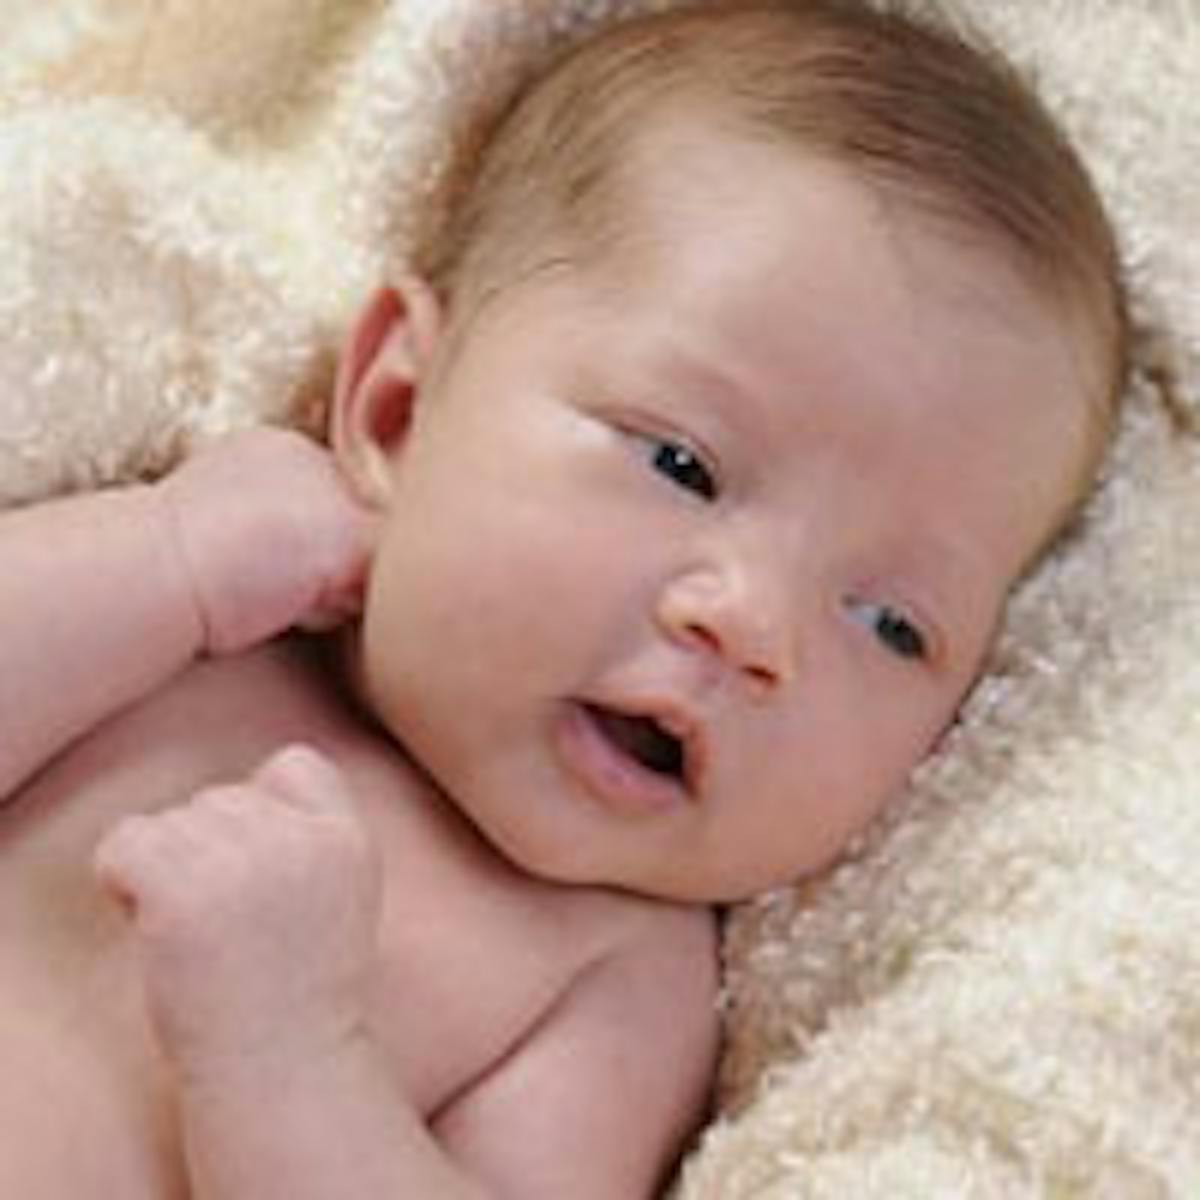 Hygiène et soin du bébé : tout sur les soins quotidiens du nourrisson